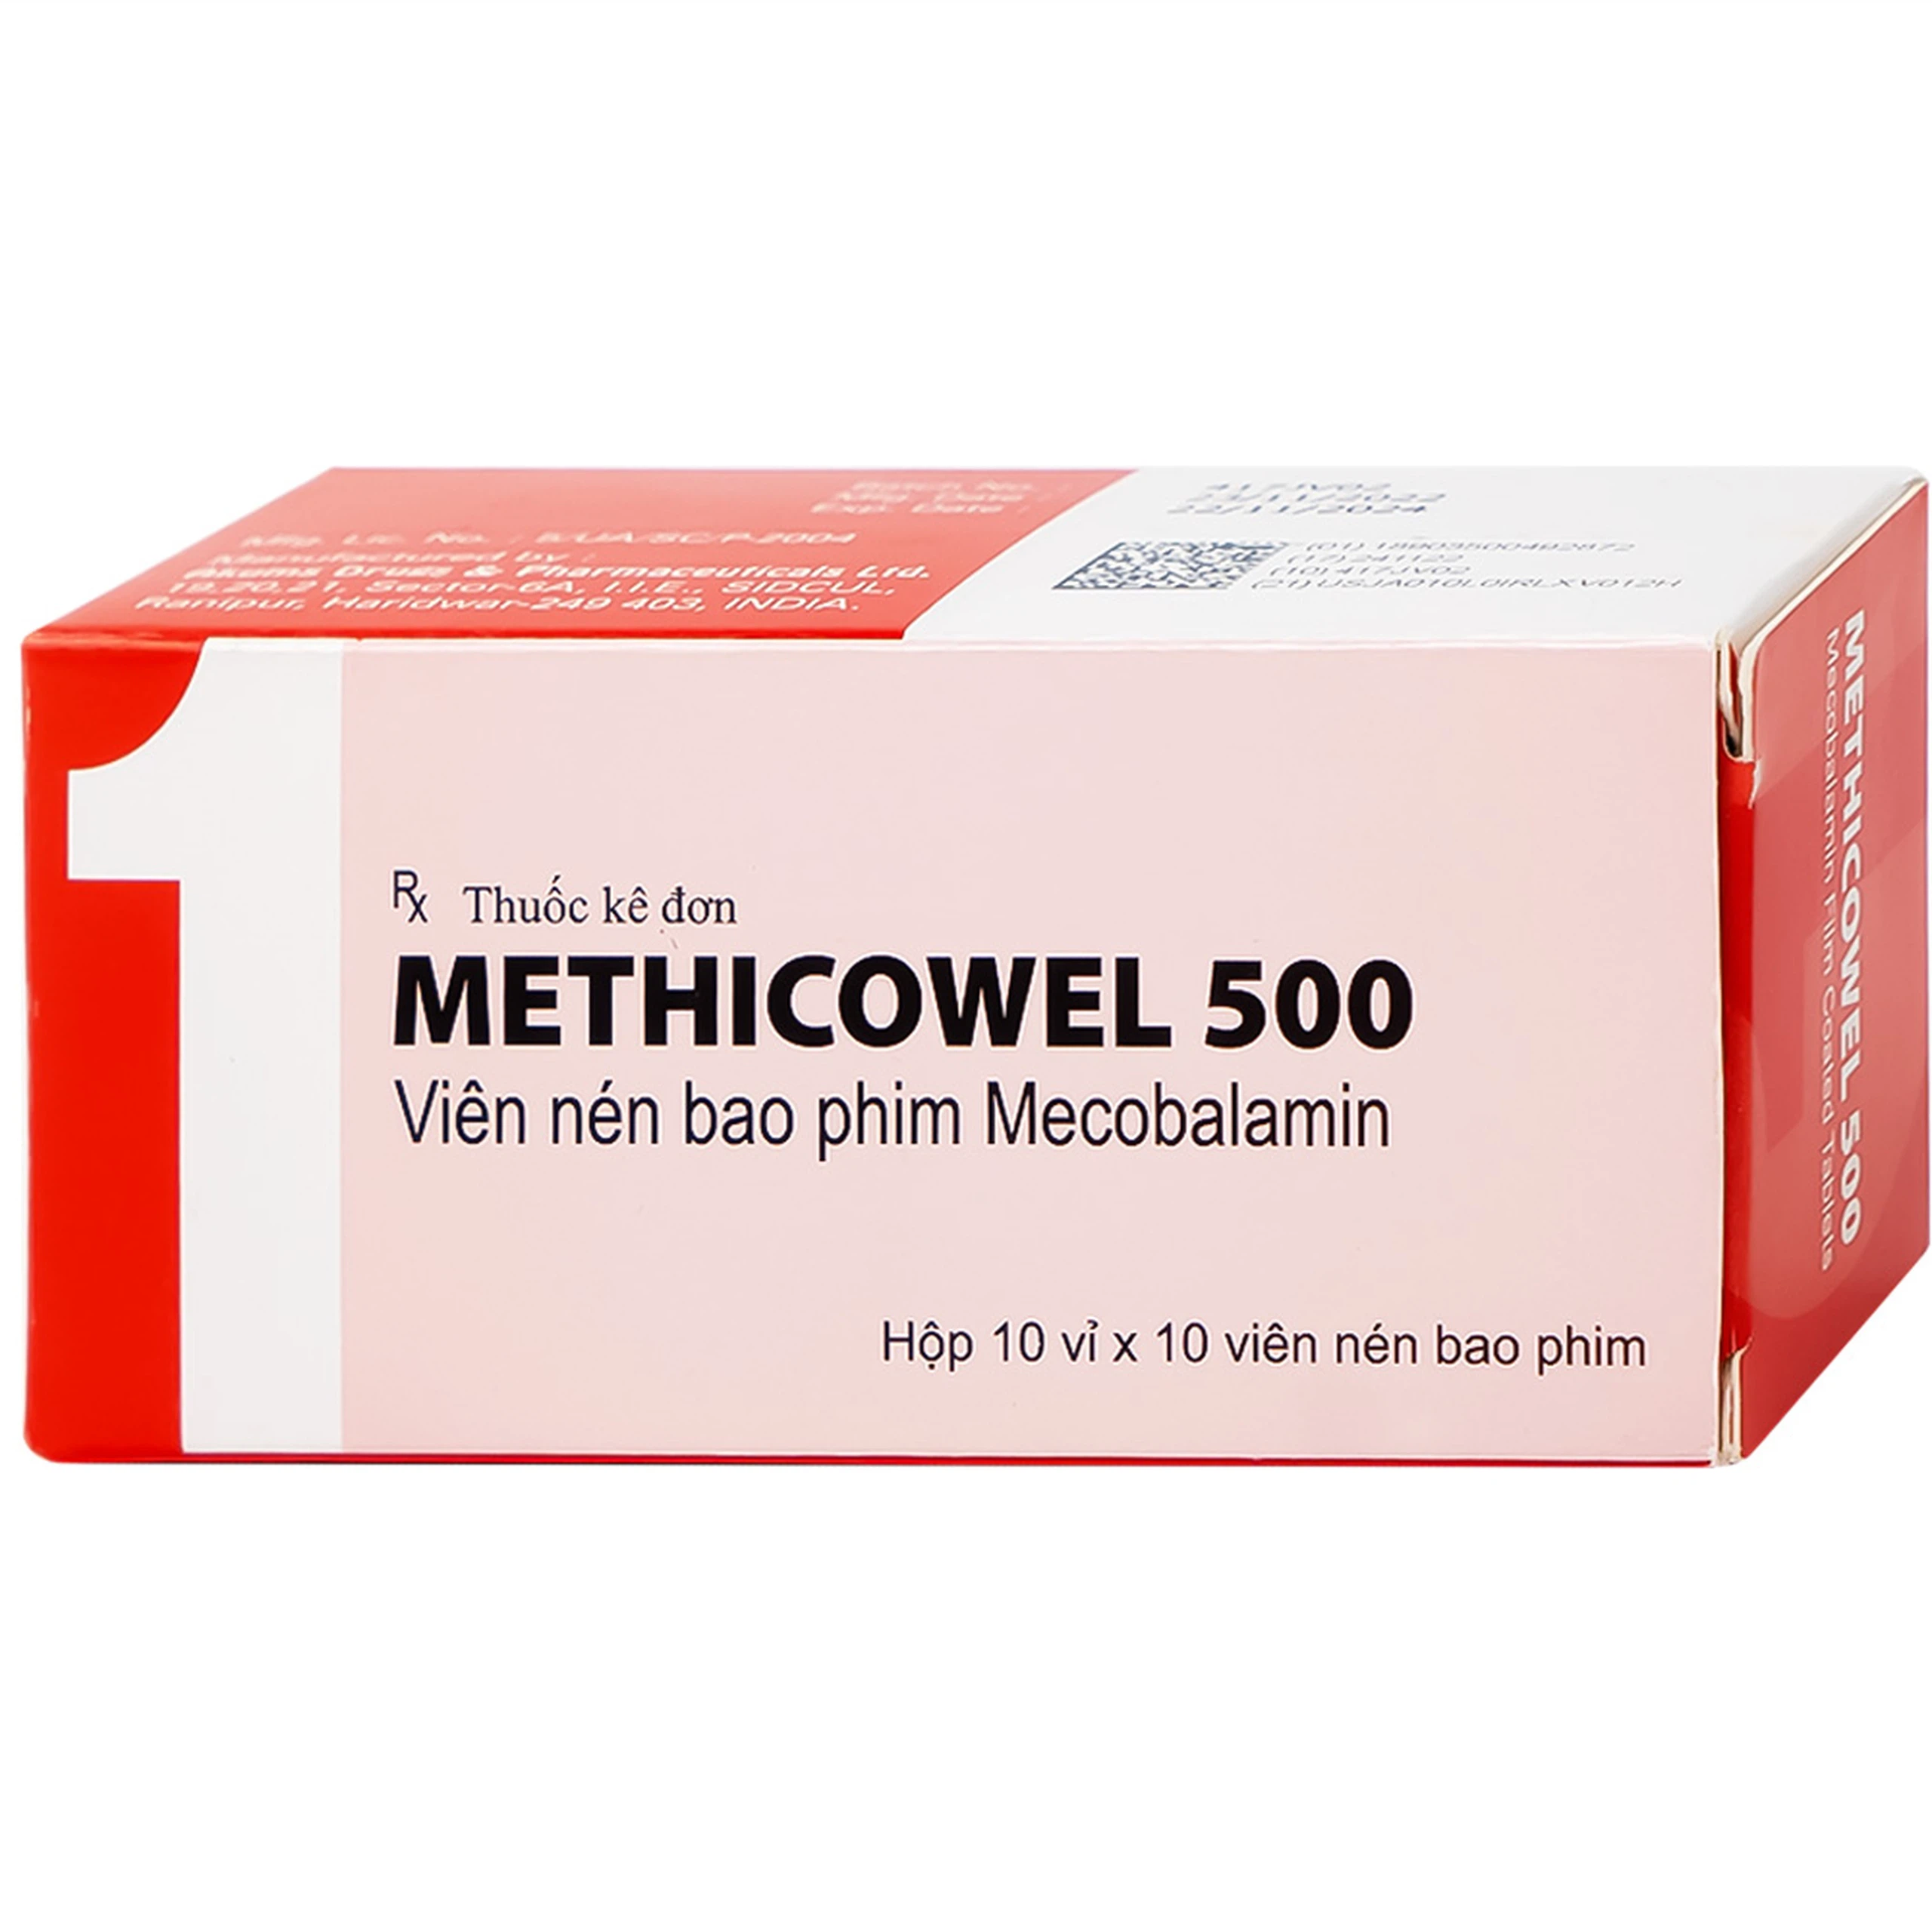 Thuốc Methicowel 500 Akums điều trị các bệnh lý thần kinh ngoại biên, thiếu máu hồng cầu to (10 vỉ x 10 viên)